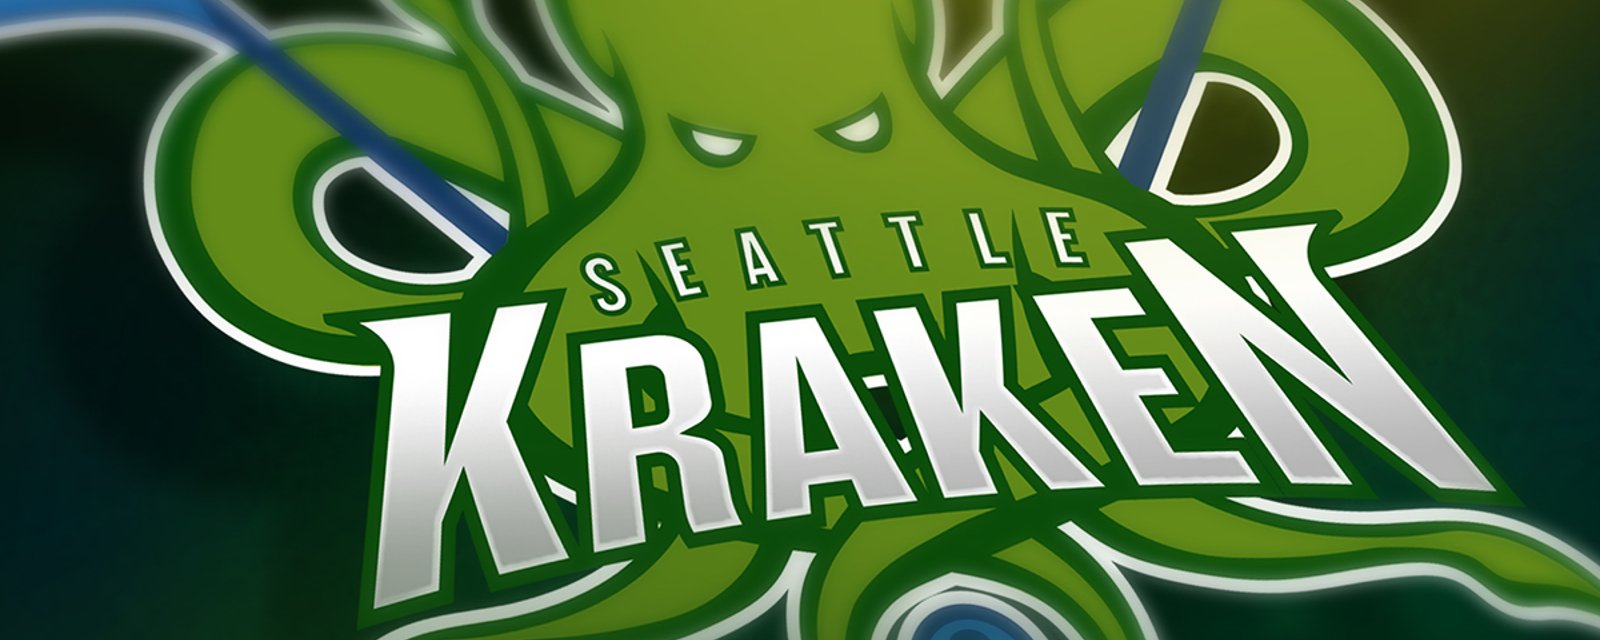 Un aperçu de l'équipe de Seattle si le repêchage d'expansion avait lieu cet été!